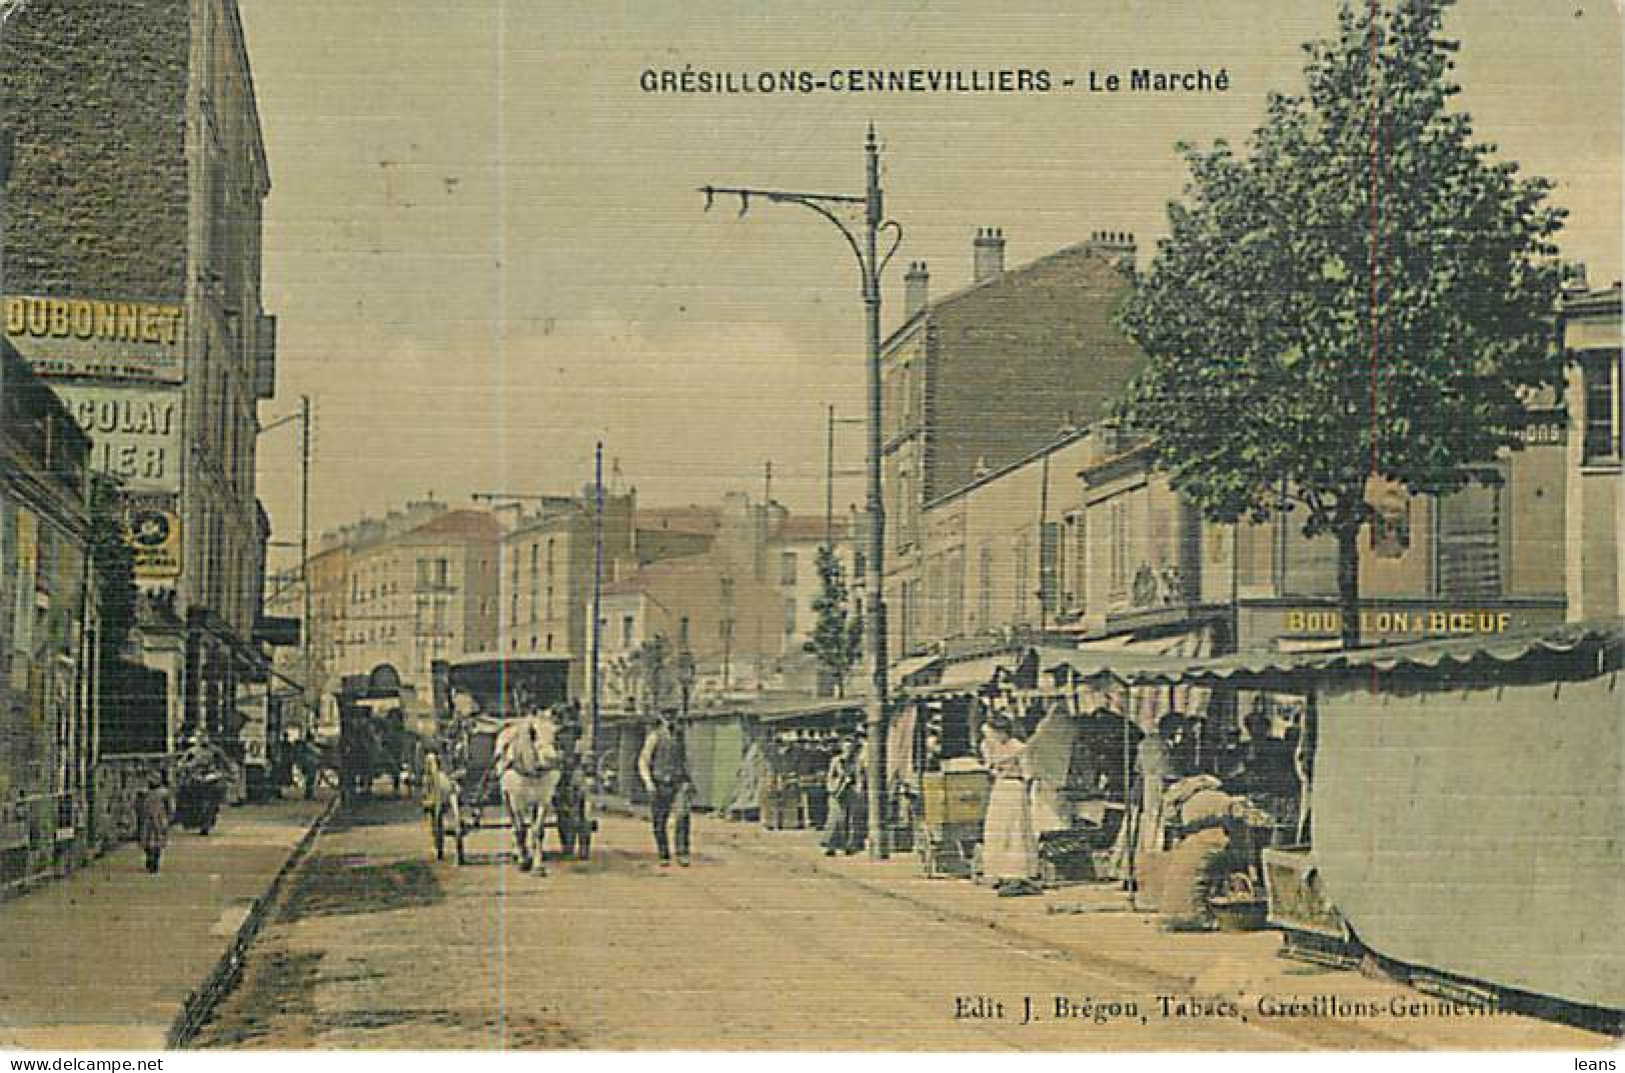 GRESILLONS GENNEVILLIERS - Le Marché - Belle Carte Tramée Vernie - Publicité Dubonnet - Gennevilliers